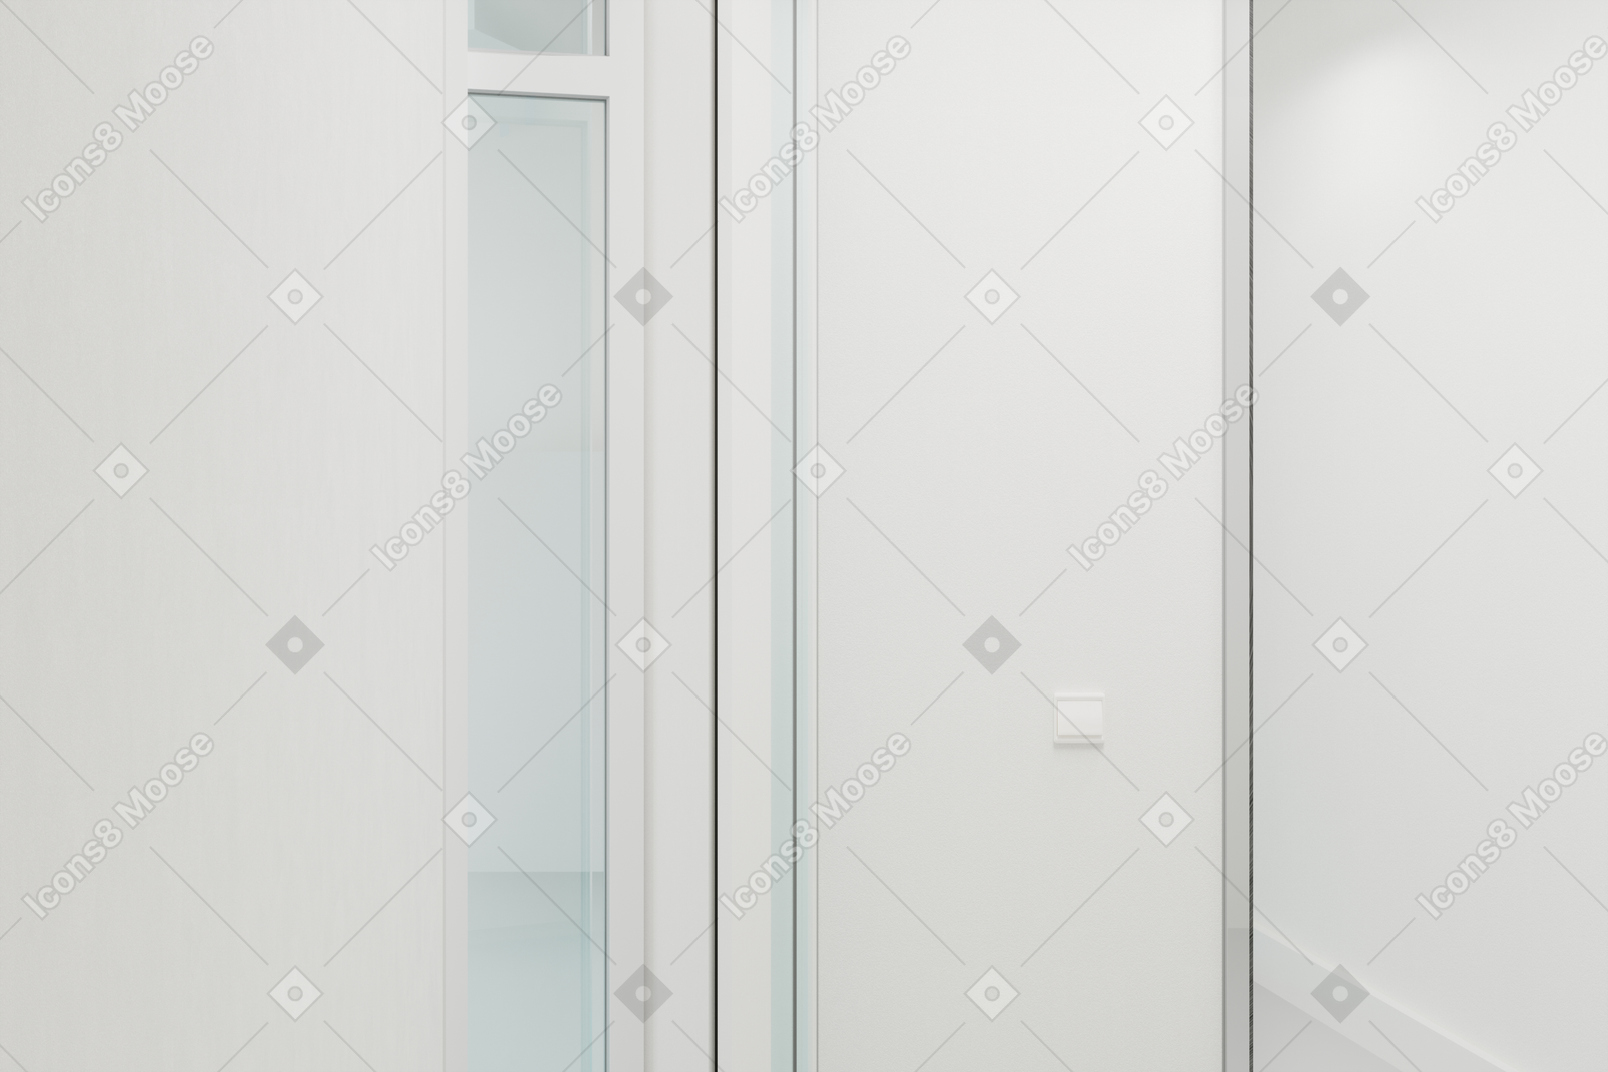 Corridoio bianco con una porta a vetri